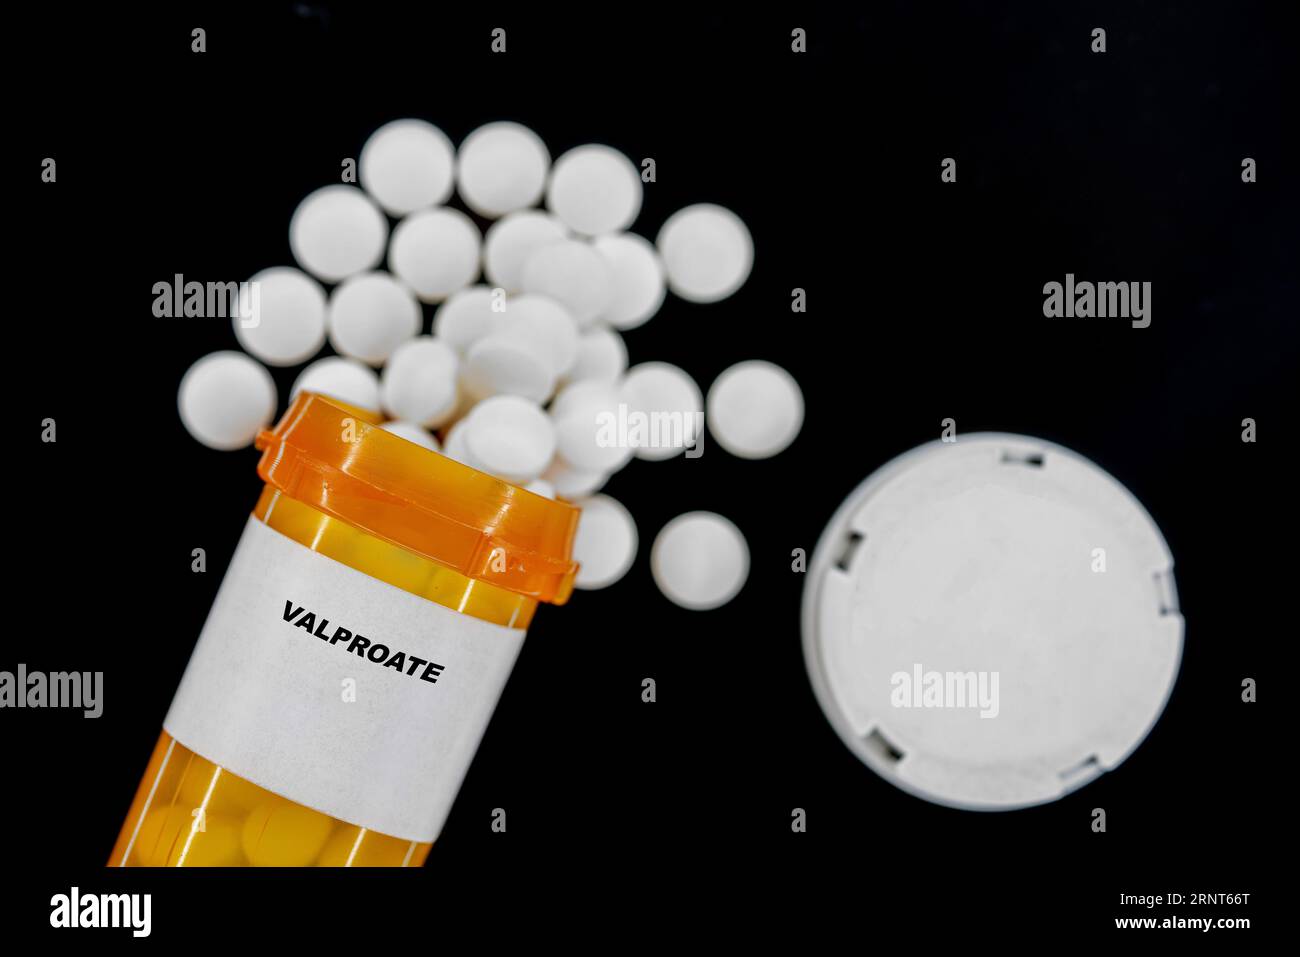 Valproate Rx píldoras médicas en botella pláctica con tabletas. Las pastillas se derraman desde el recipiente amarillo. Foto de stock